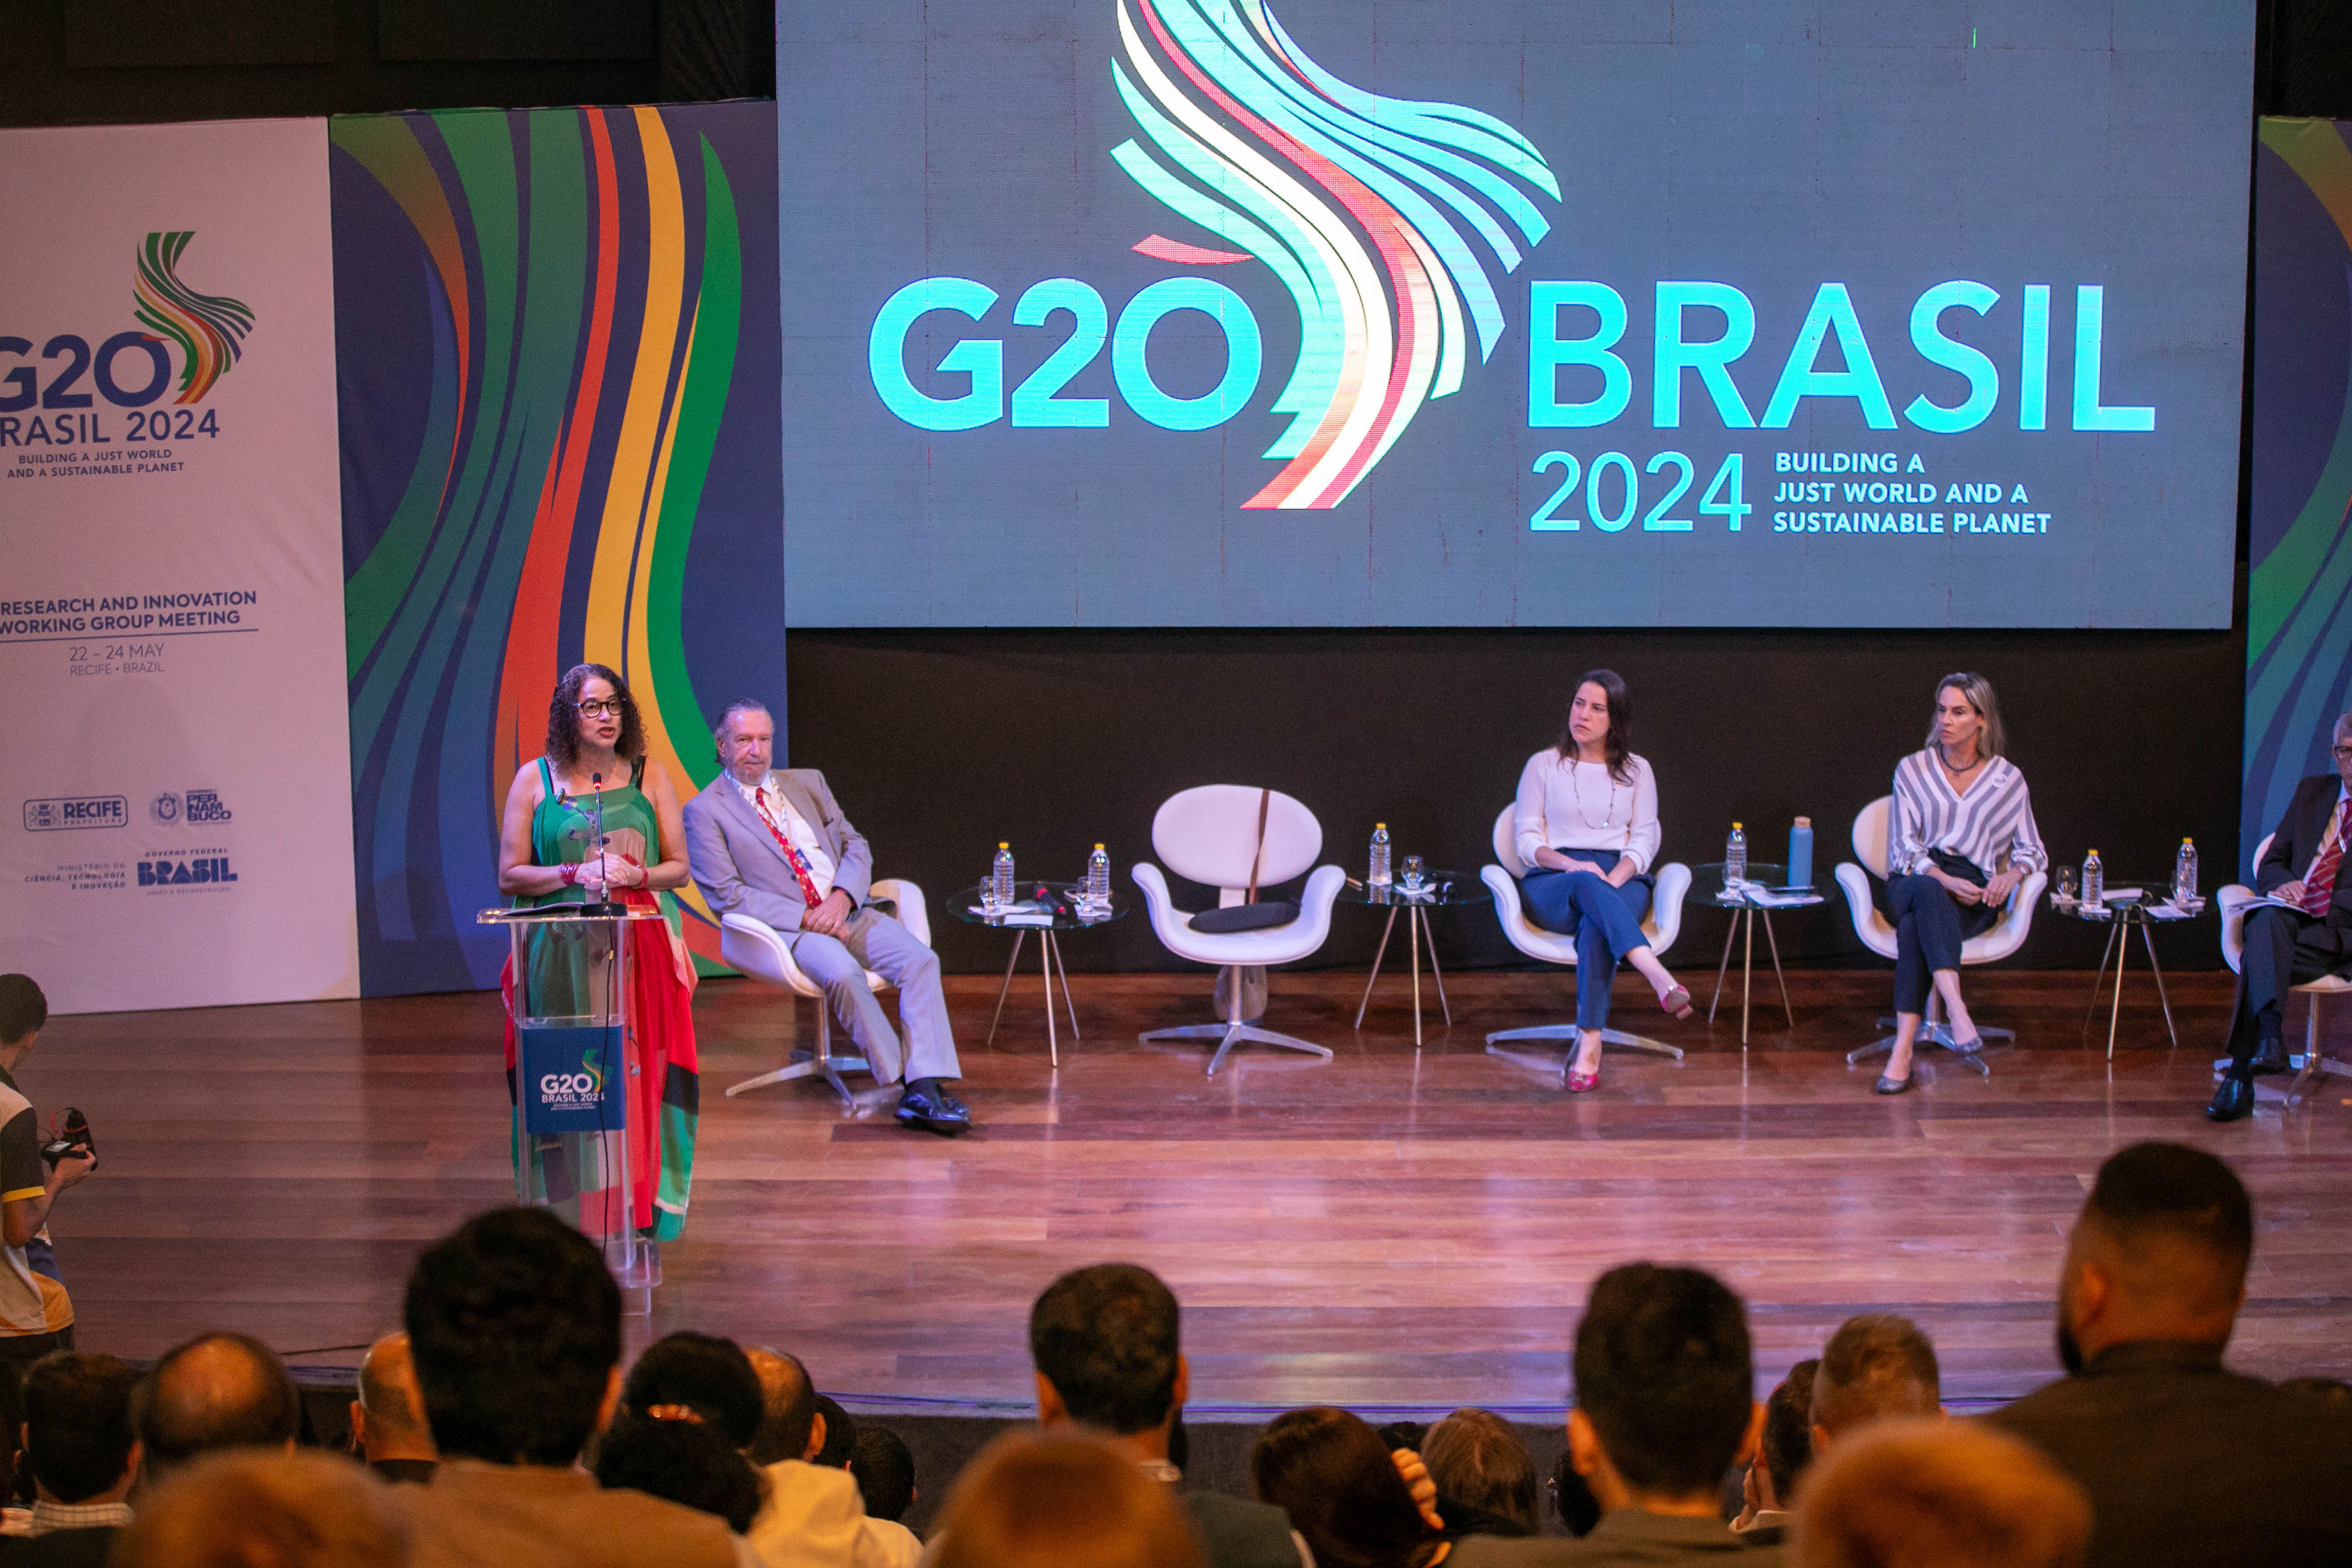 Ministra da Ciência, Tecnologia e Inovação participou da mesa de abertura da 3ª Reunião do Grupo de Trabalho de Pesquisa e Inovação do G20, em Recife (PE)